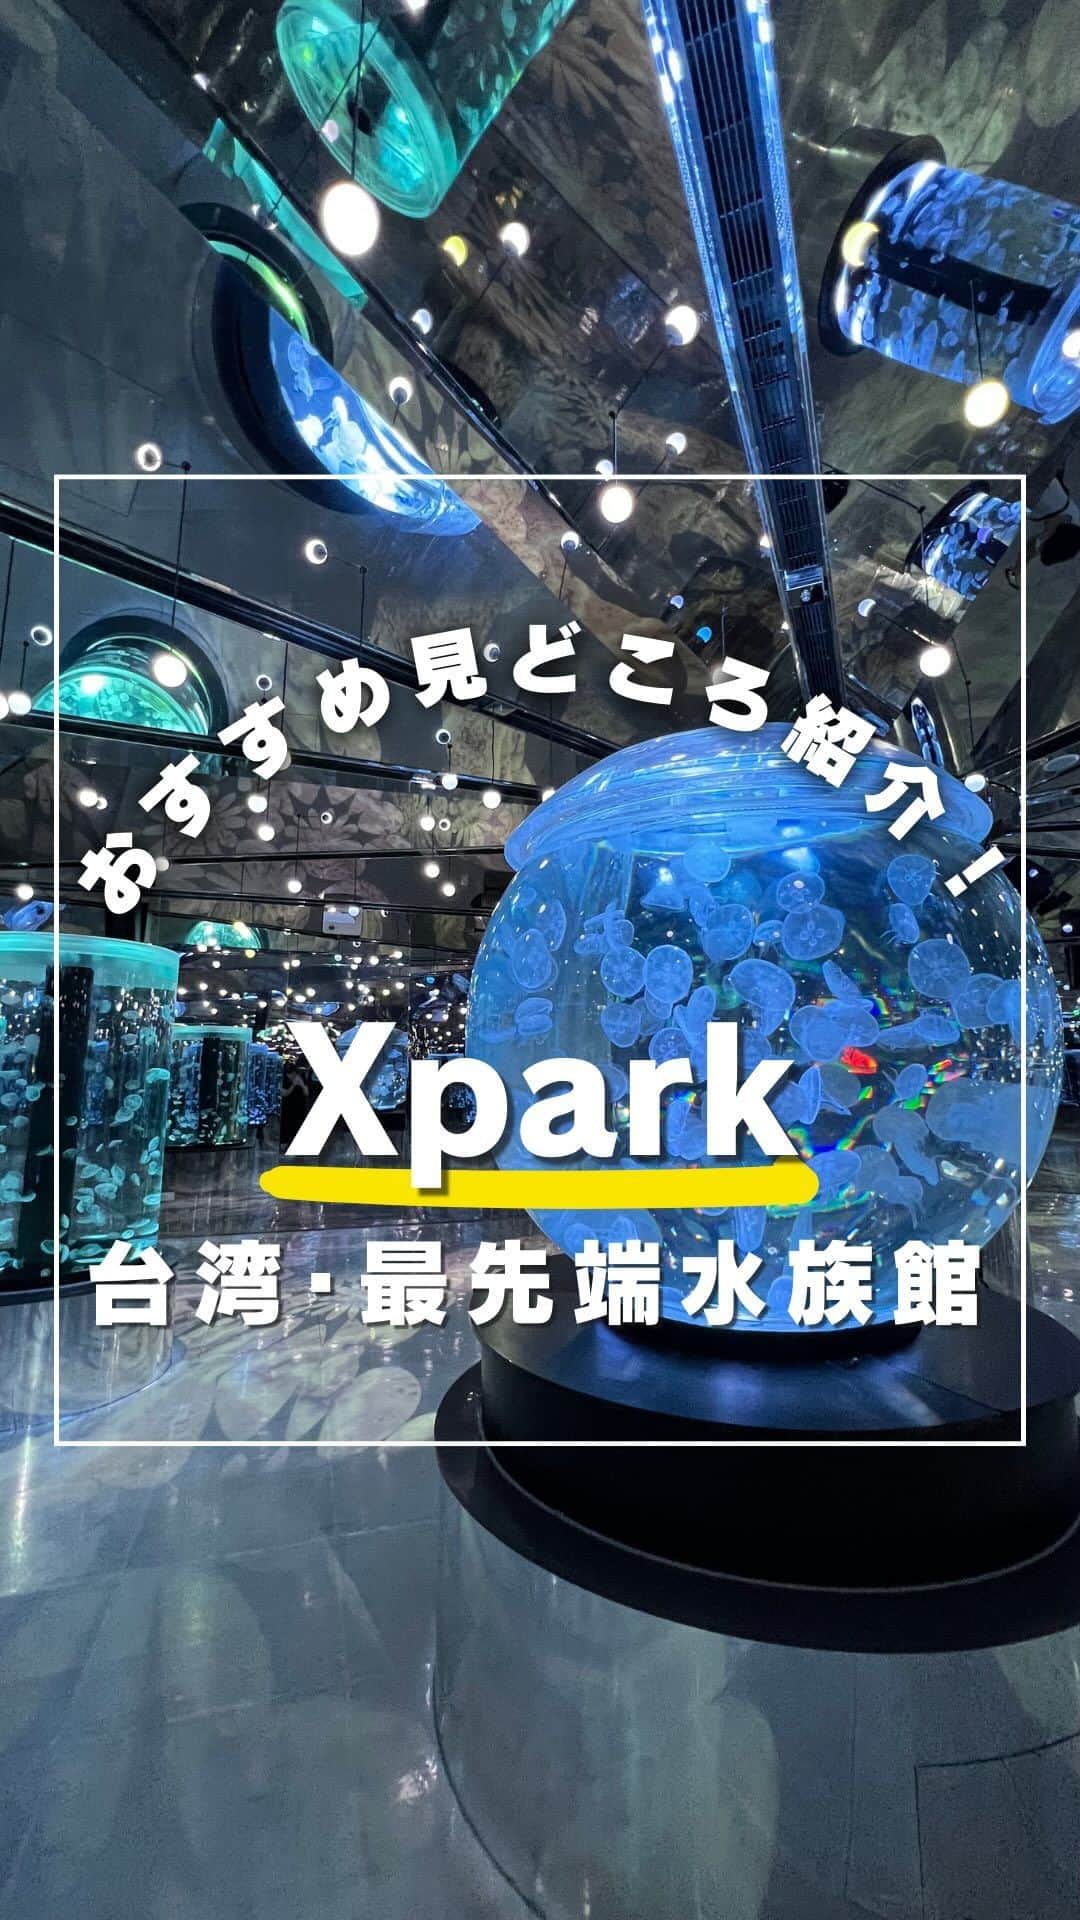 KKdayのインスタグラム：「世界の旅情報をみるならコチラ👇！ @kkdayjp  【台湾｜Xpark｜都市型水族館🇹🇼】  台湾桃園市にある「Xpark」は、最新のテクノロジーを駆使した都市型水族館🐠  空港からも台北駅からも30分ほどで到着できる便利な水族館！  アウトレットモールも併設しているから買い物ついでに行くのもあり✨  その見どころは、なんといっても幻想的なクラゲのエリア。  壁から天井まで、一面鏡張りのエリアで照明がピンクやブルー、グリーン、ホワイトなど様々な色に変化し、世界観がすごい！  まるで万華鏡の中にいるようでした✨  その他にも、台湾近海の海洋生物を展示する「フォルモサゾーン」、多種多様なサンゴ礁を展示する「サンゴゾーン」など、見どころが盛りだくさん！  台湾旅行の際には、ぜひ「Xpark」を訪れてみてくださいね！  投稿を保存して、次回の台湾旅行に役立ててもらえると嬉しいです🥳  ーーーーーーー✂︎ーーーーーーー  KKdayではXparkのチケットなど充実の台湾商品を販売中🎉 @kkdayjp のURLからチェックしてね♪  ーーーーーーー✂︎ーーーーーーー  ／ 旅先で撮った写真に「#kkday旅」を付けてシェアしてください💓 ステキなお写真はKKday公式アカウントでご紹介します♪ ＼  #旅行好きな人と繋がりたい #旅スタグラム #旅好き#女子旅 #海外女子旅 #水族館 #台湾情報 #台湾 #台湾旅行 #台湾観光 #台湾女子旅 #台湾スイーツ #台湾好きな人と繋がりたい #台湾好き」